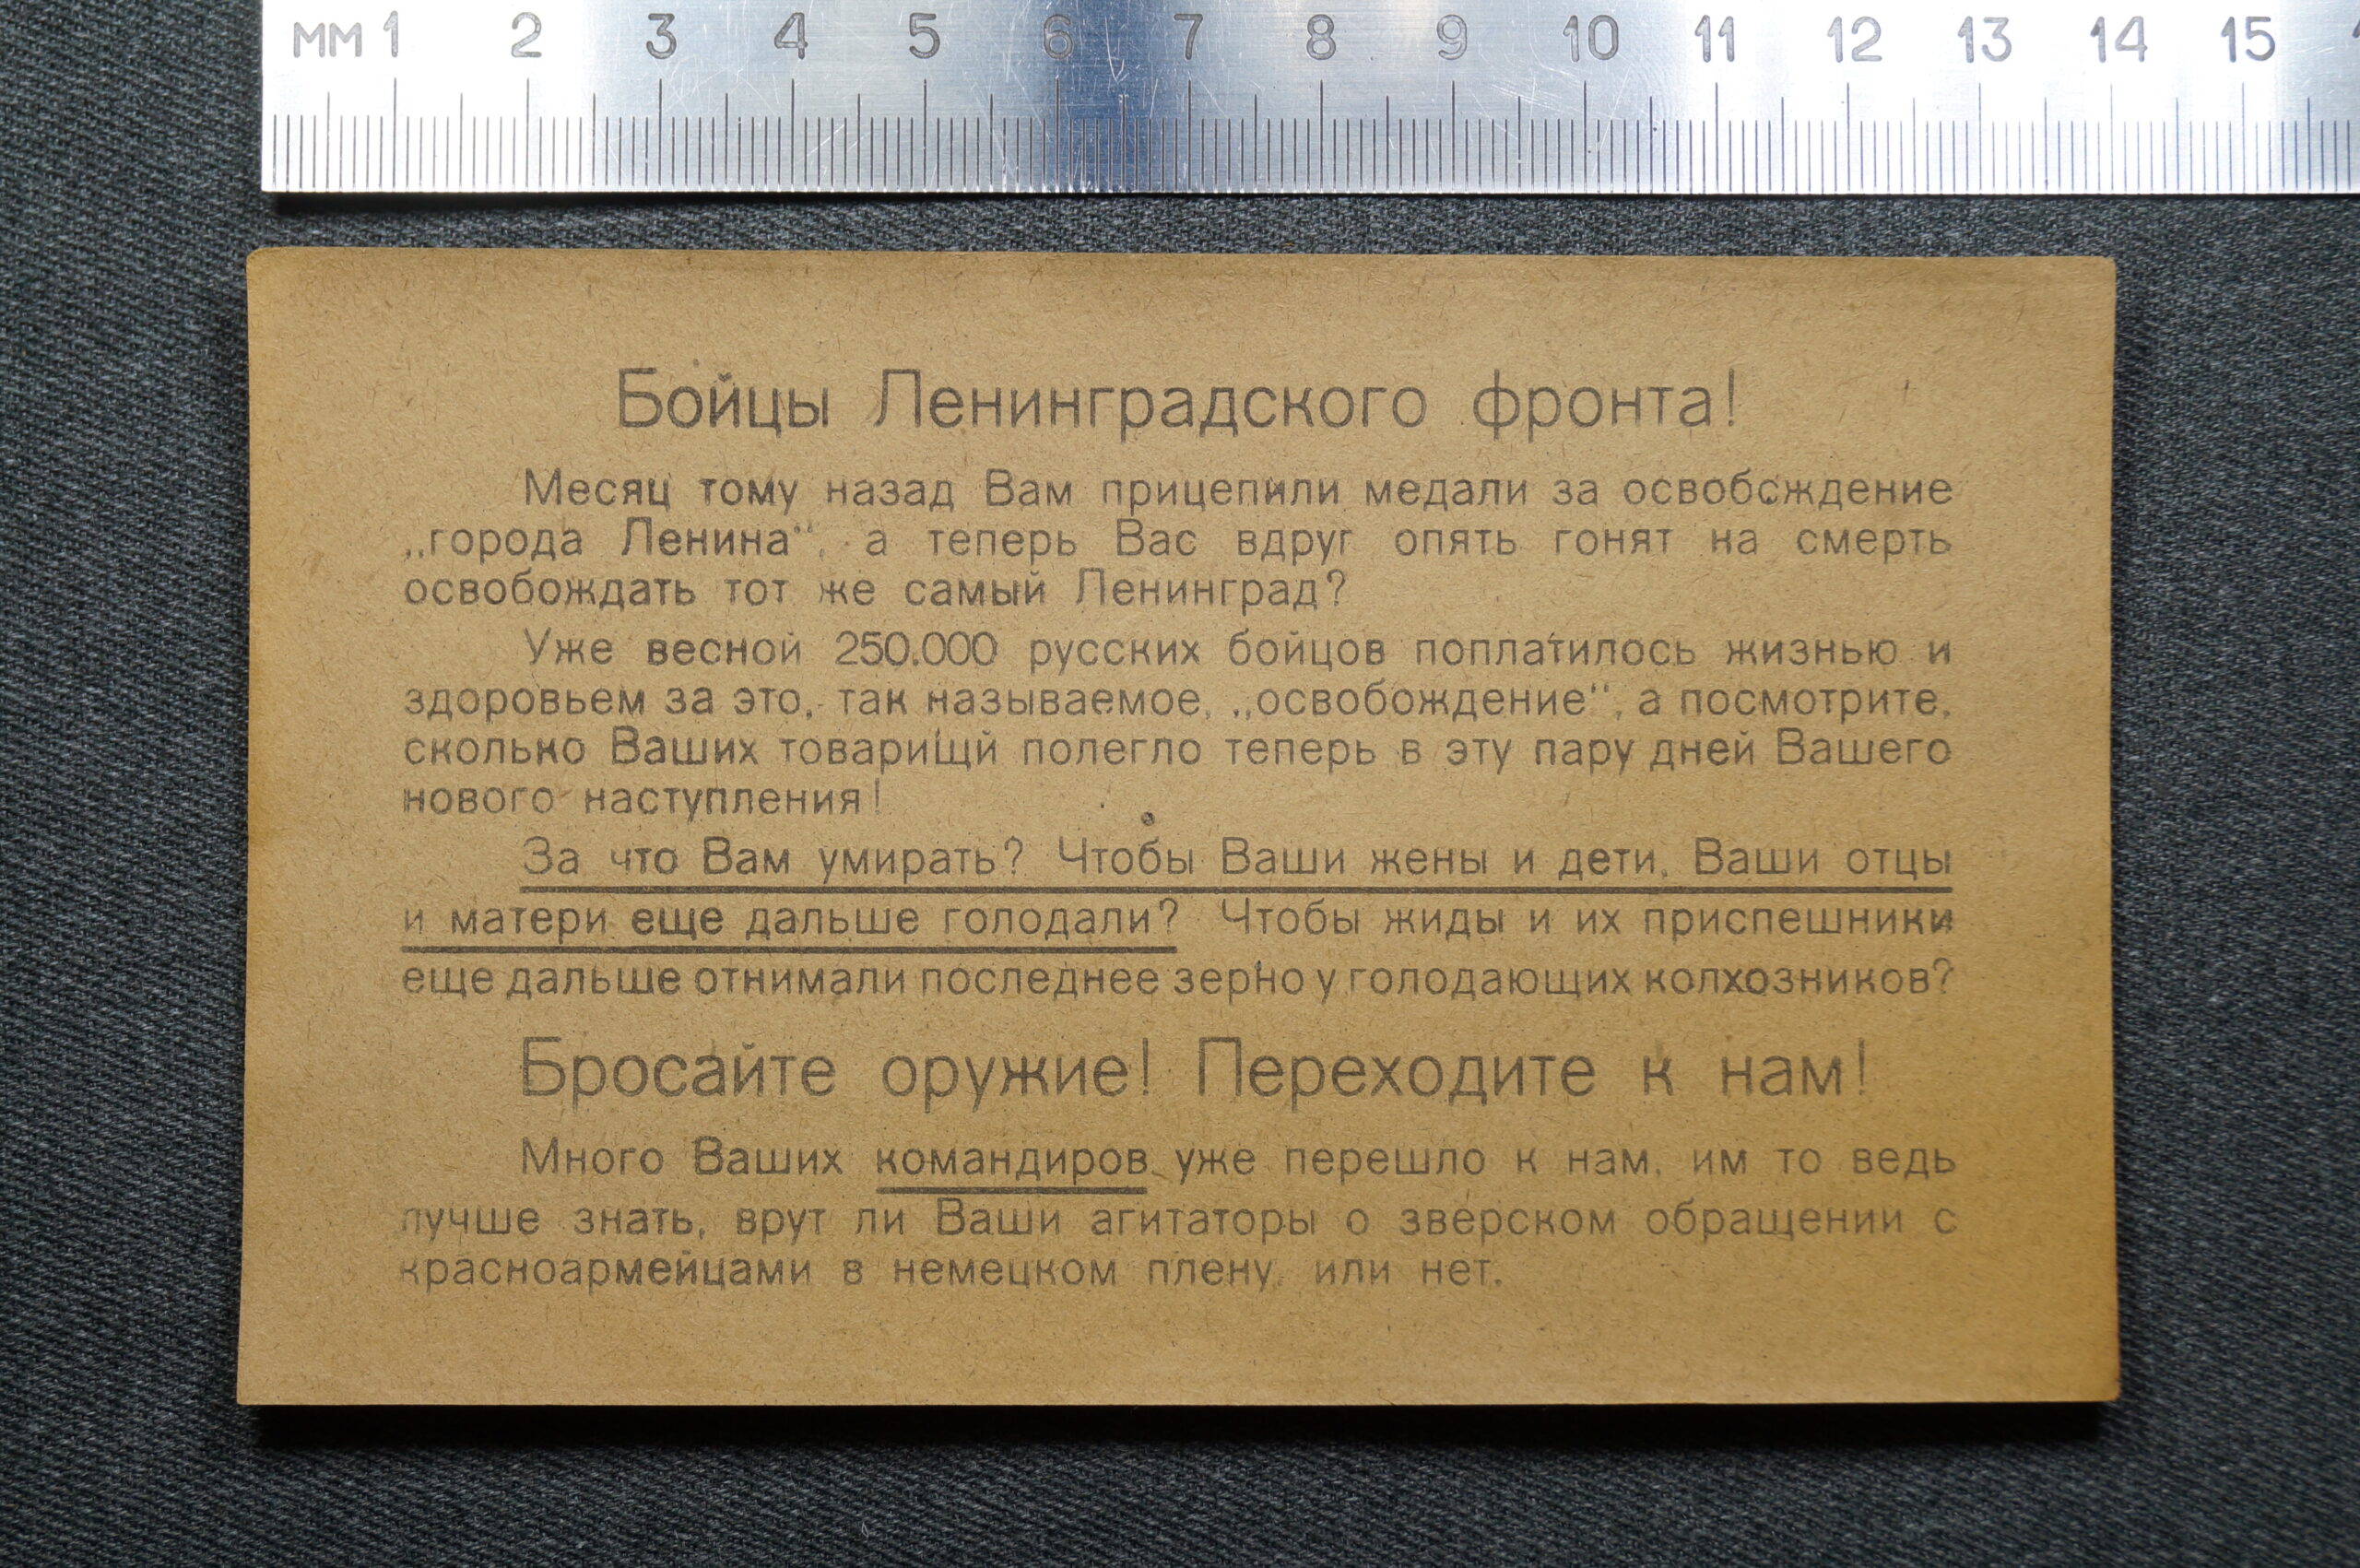 Немецкая листовка пропуск из агитационного снаряда